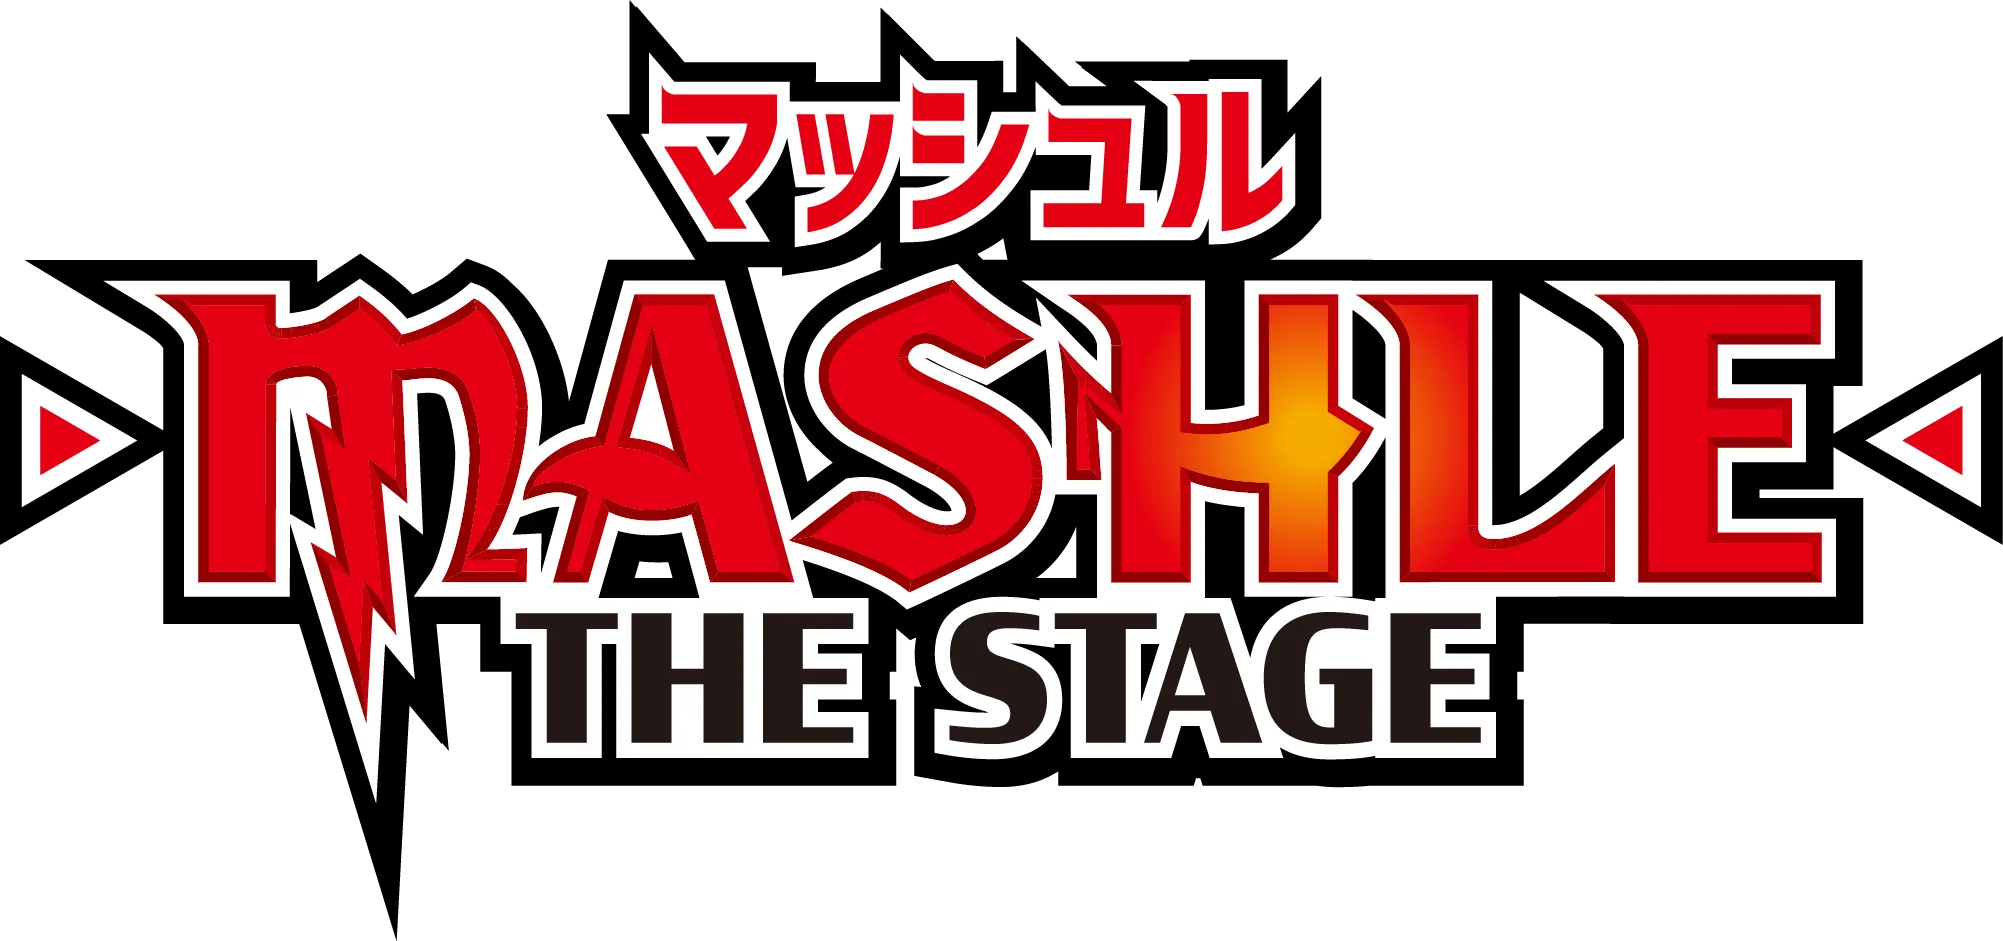 舞台「マッシュル-MASHLE-」THE STAGE